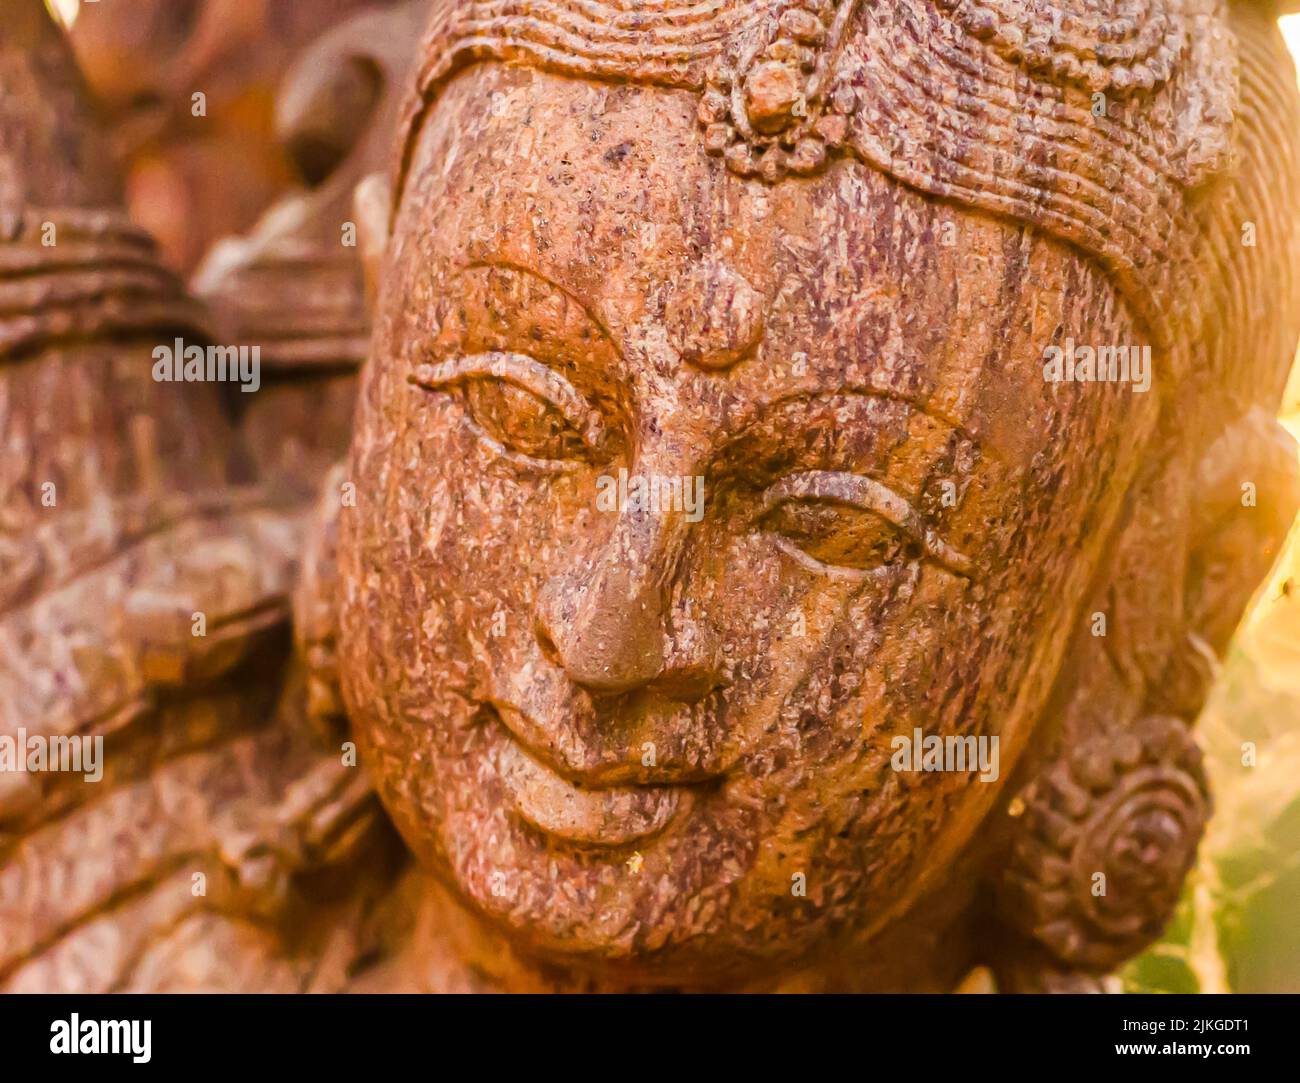 Plano de la cabeza de la diosa hindú Sarasvati. Estatua de la diosa Saraswati, la diosa del conocimiento, la música, el arte, la sabiduría y la naturaleza. Foto de stock